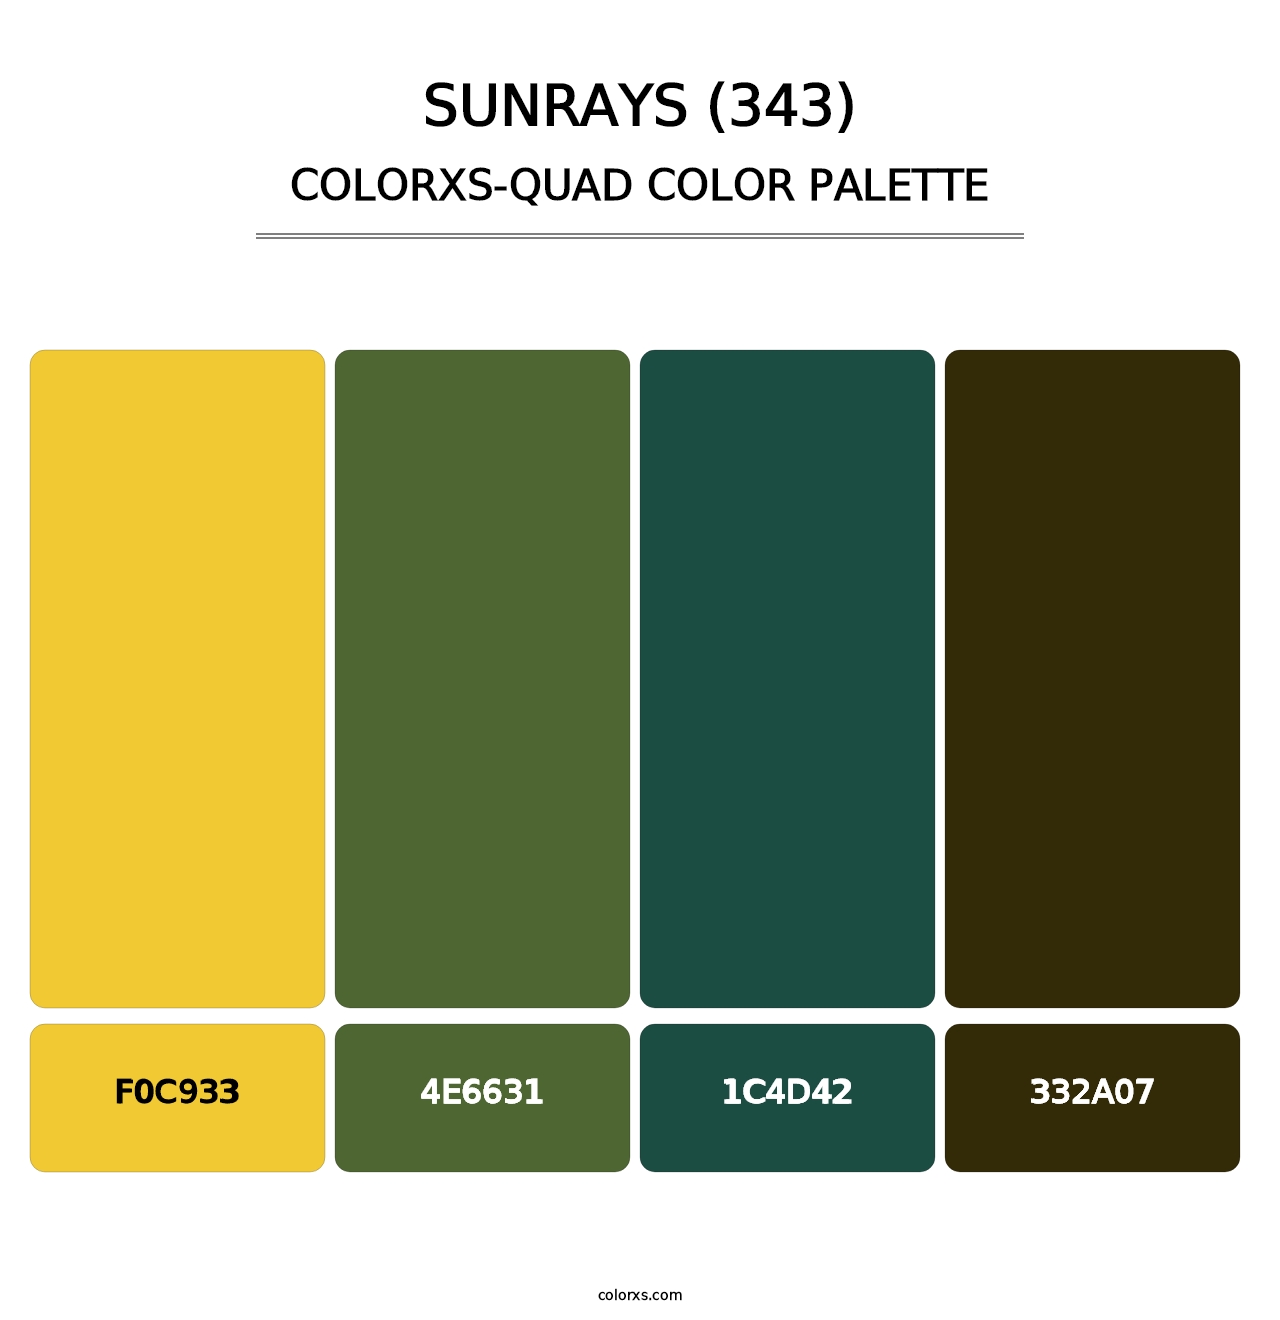 Sunrays (343) - Colorxs Quad Palette